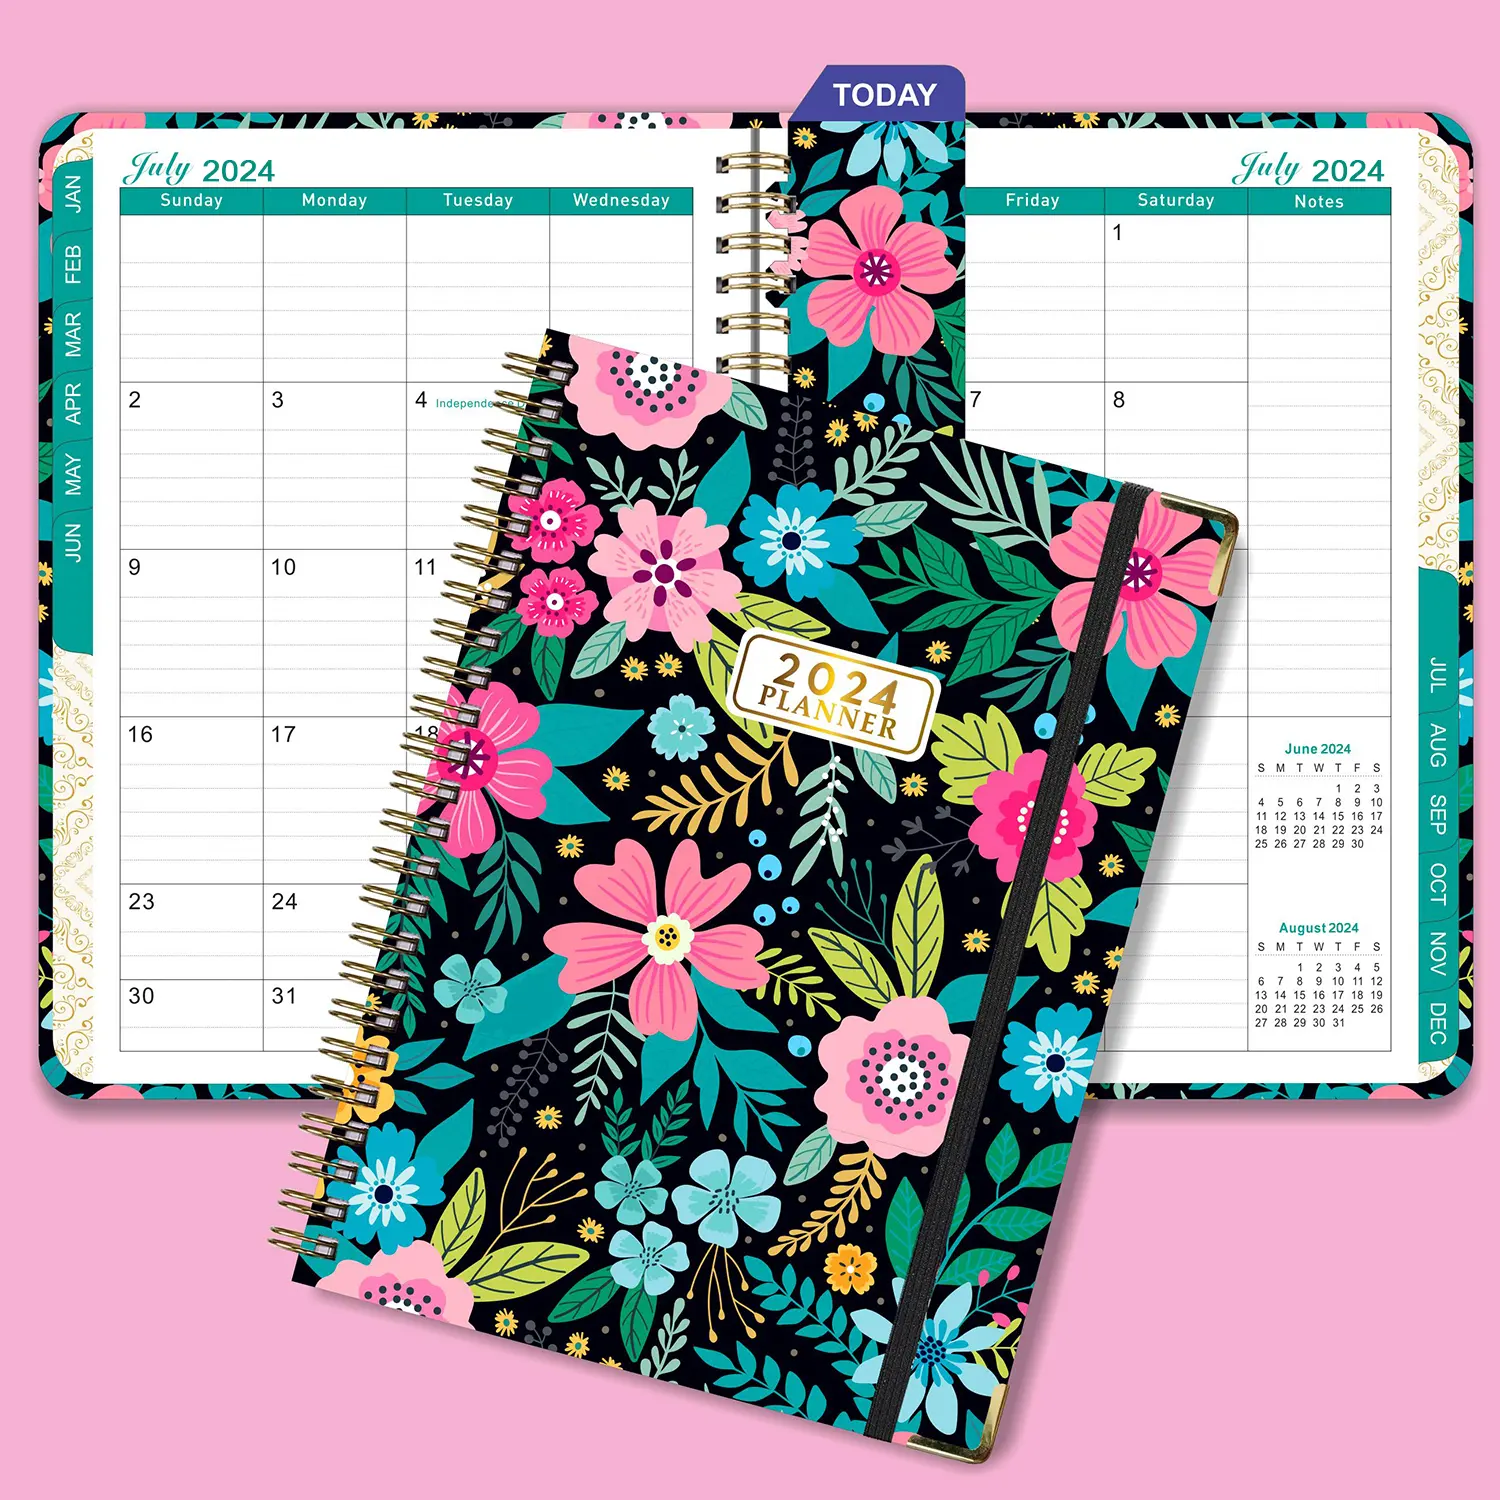 2025 2024 Impresión personalizada Agenda de tapa dura Planificador Calendario A4 A5 Planificador semanal mensual anual